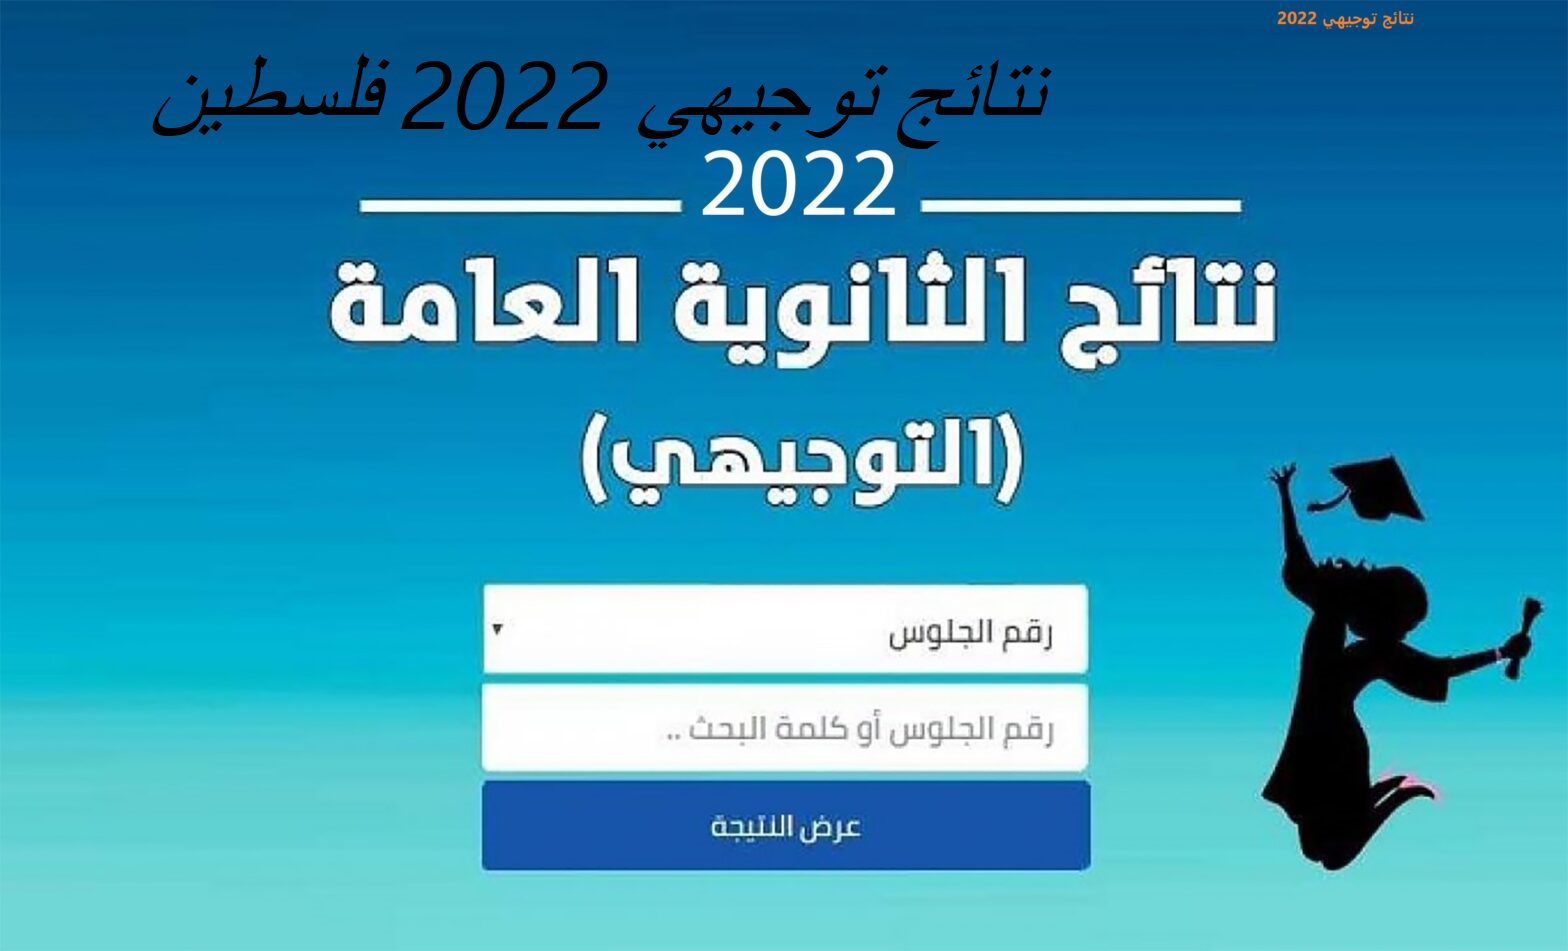 نتائج توجيهي 2022 فلسطين 1 - مدونة التقنية العربية